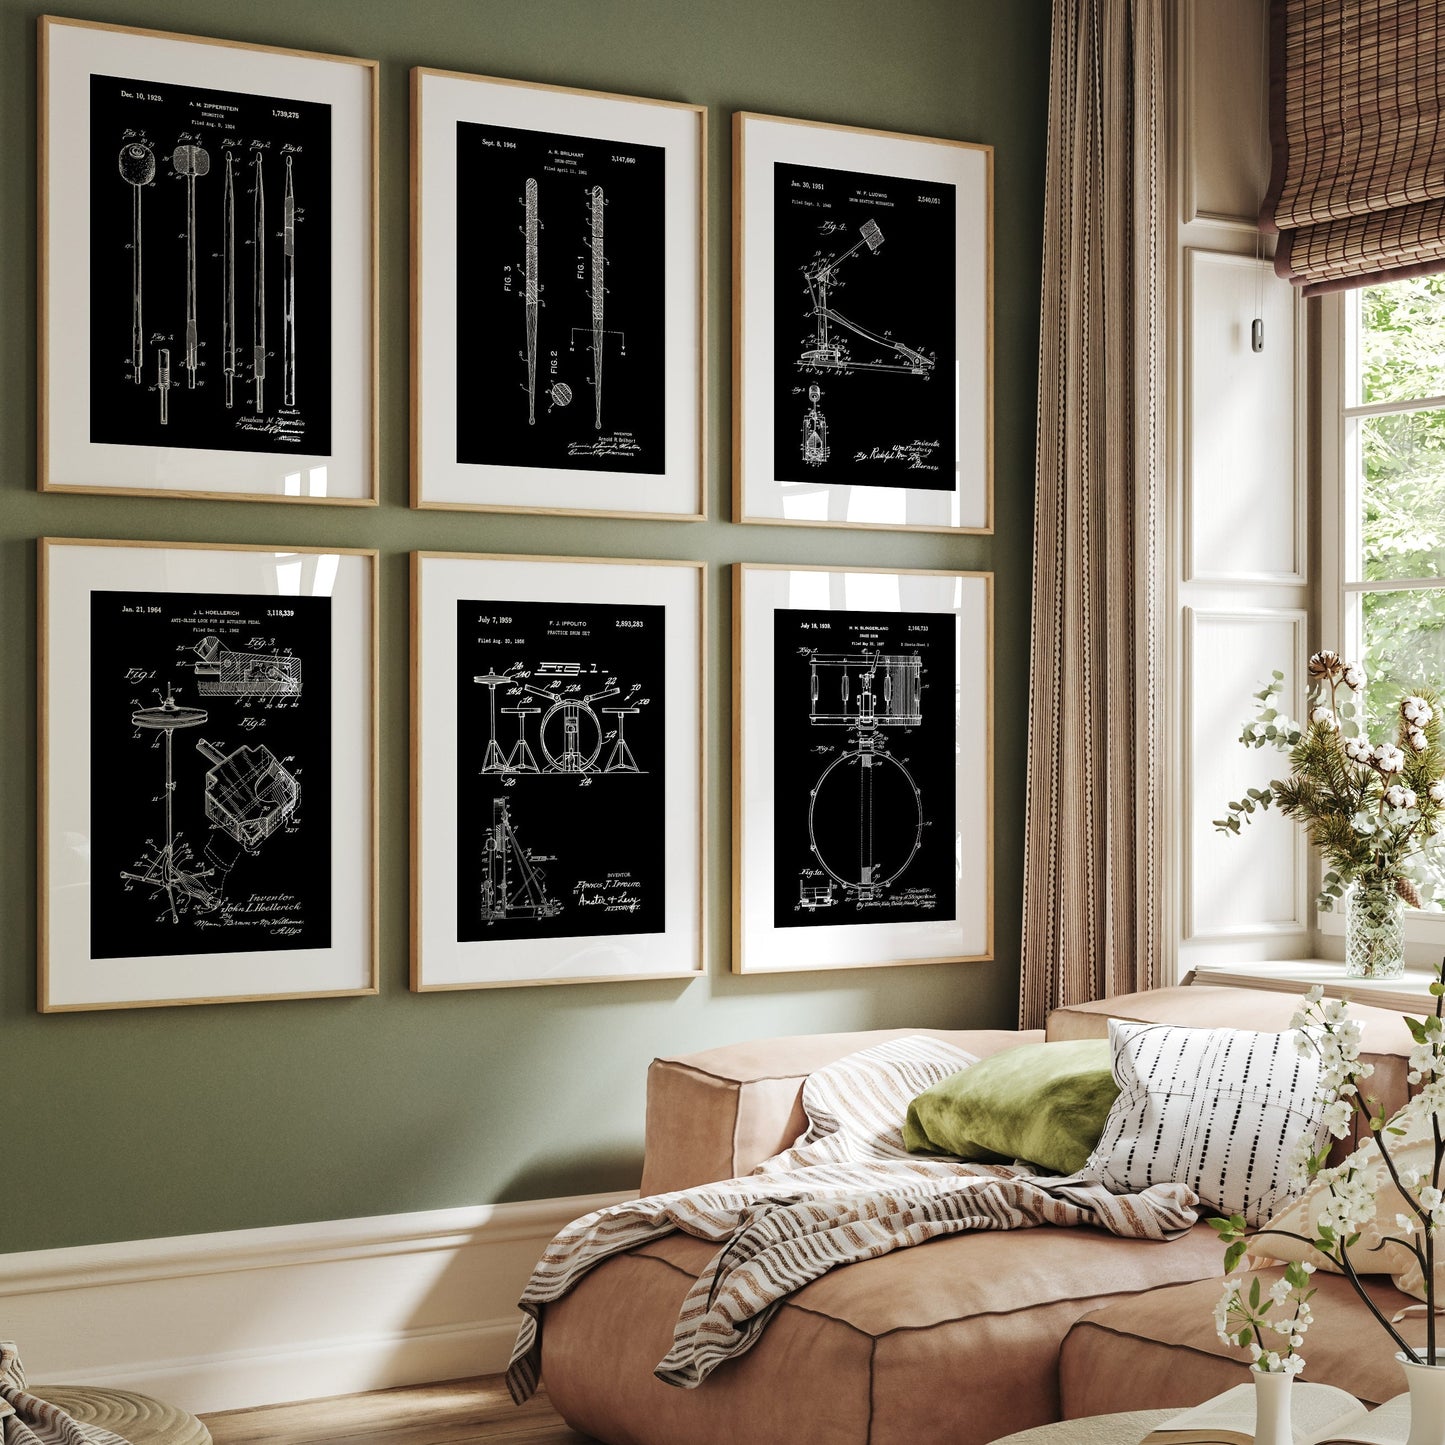 Drum Set Of 6 Patent Prints - Magic Posters